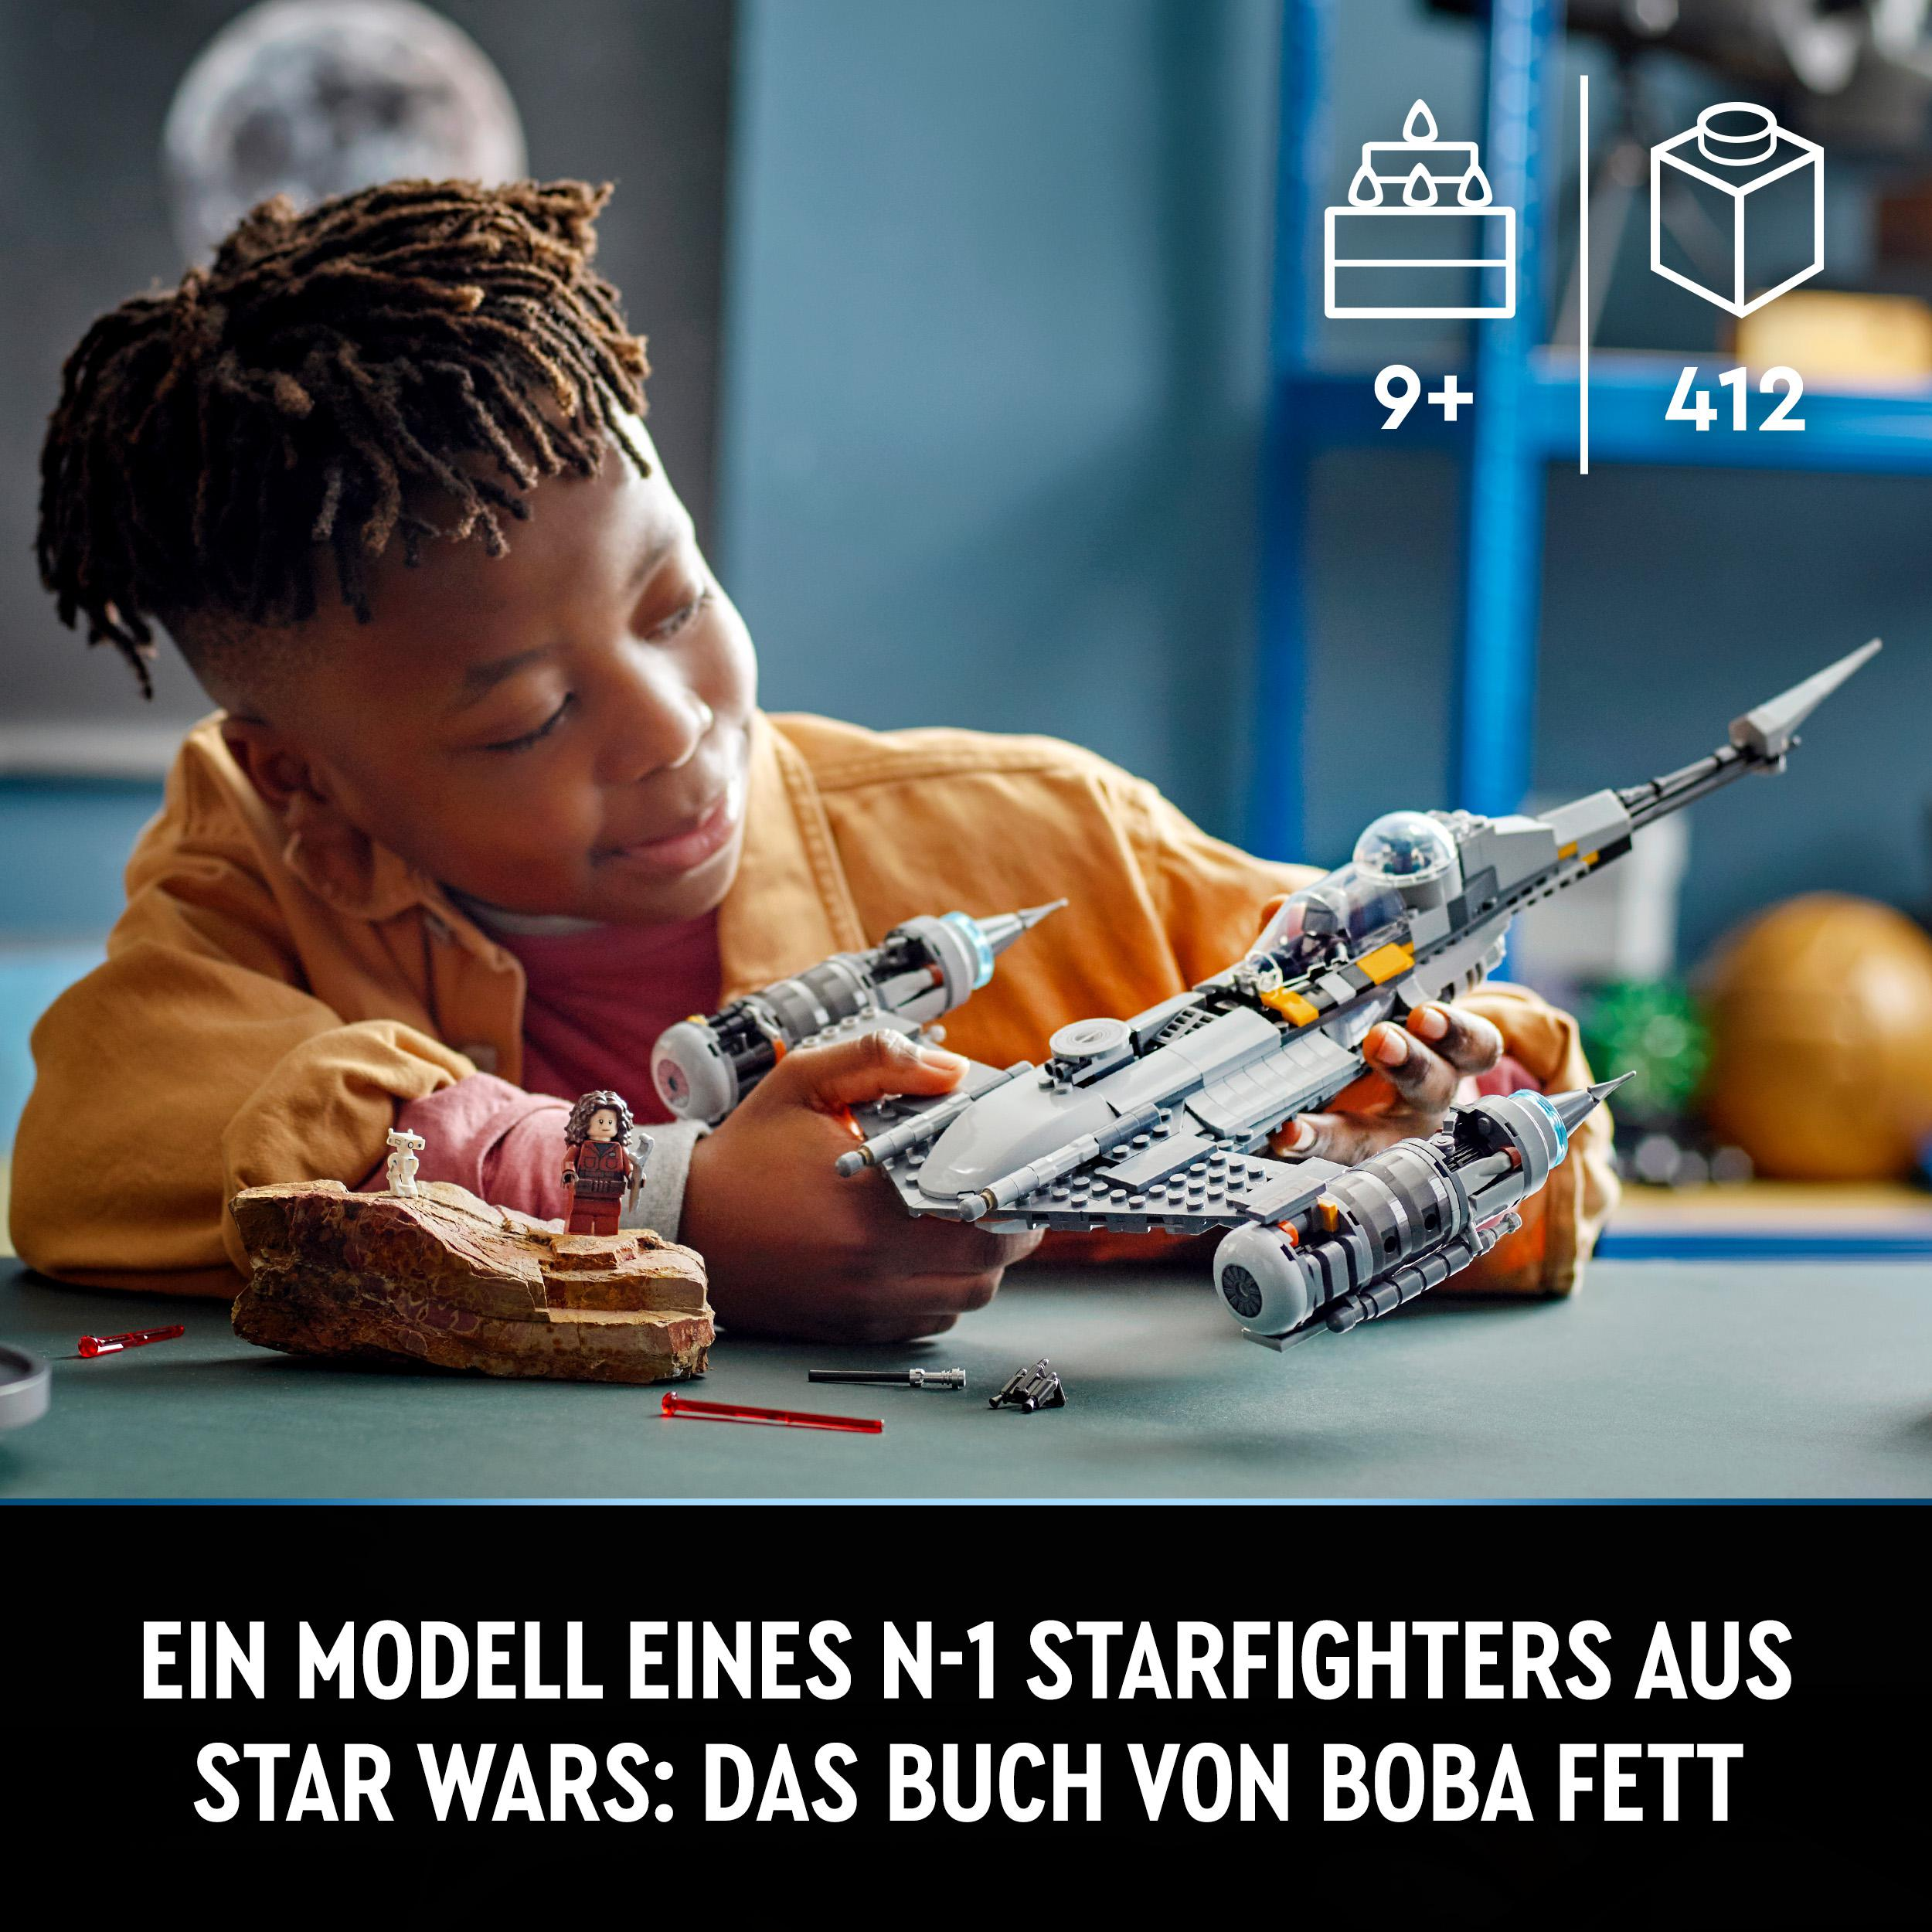 N-1 75325 des Der LEGO Star Wars Mehrfarbig Starfighter Bausatz, Mandalorianers